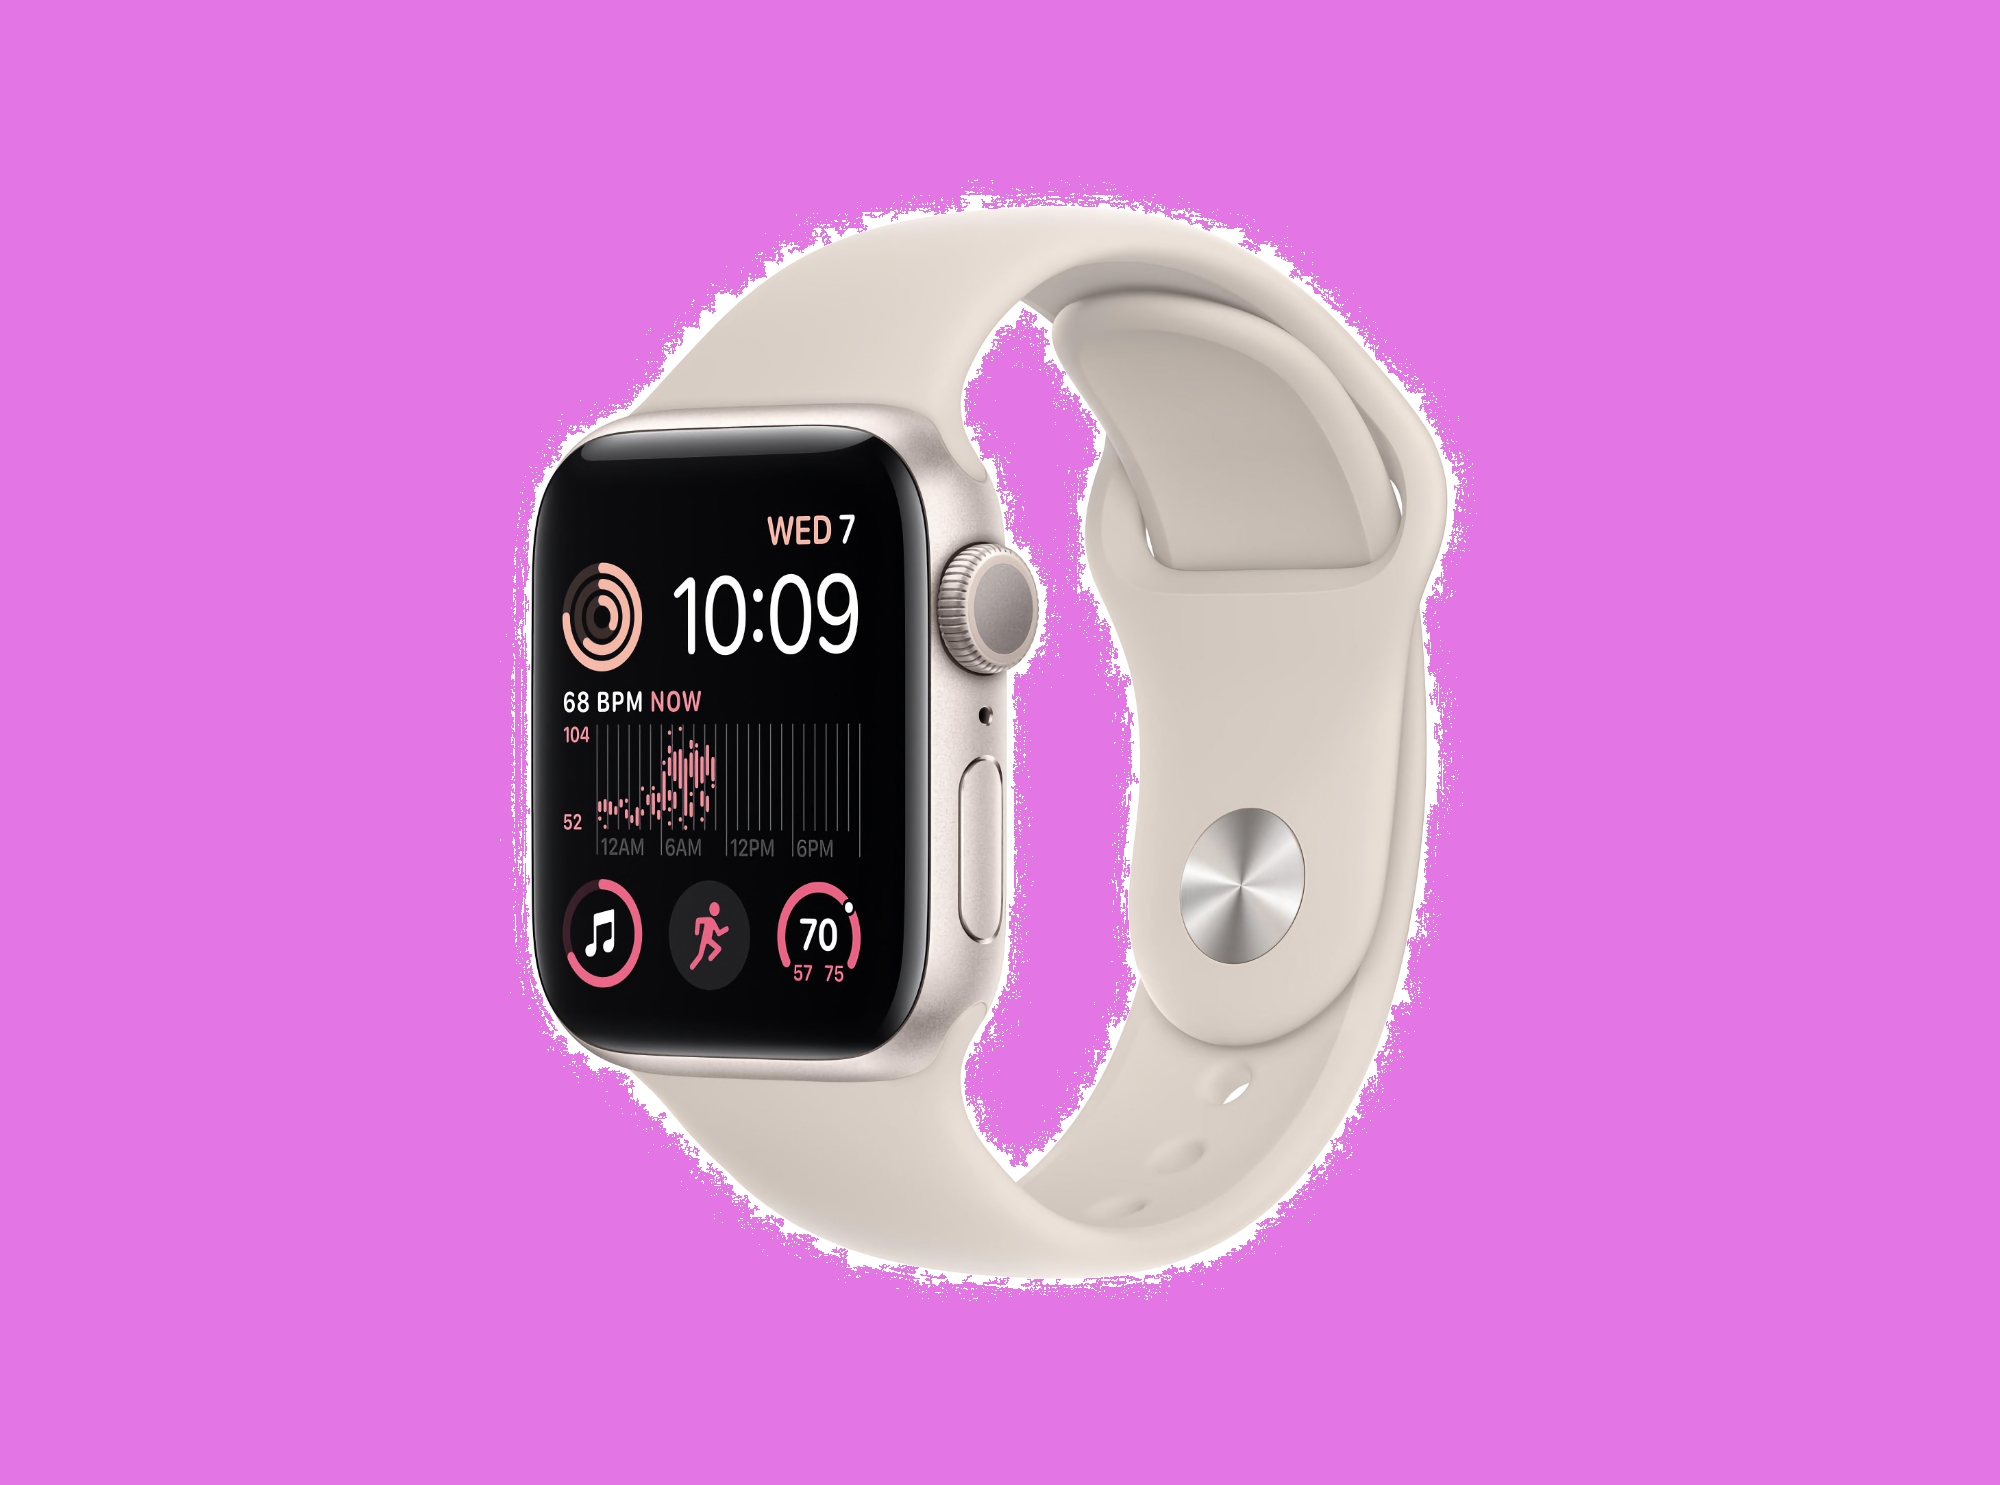 Apple Watch SE 2 med 44 mm kropp och stöd för mobilnät finns på Amazon-rean med 89 $ rabatt